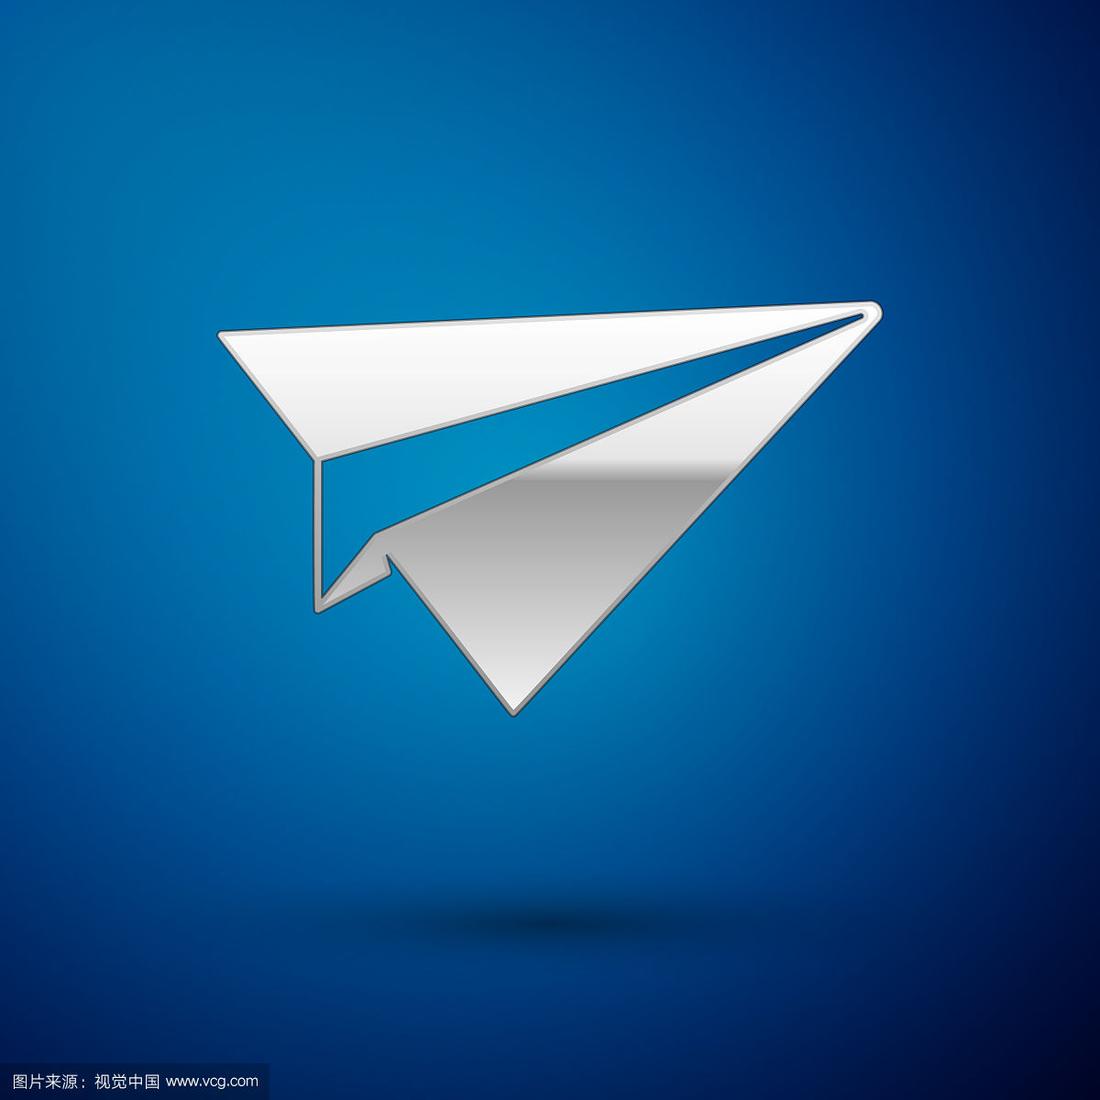 聊天软件蓝色纸飞机图标,图标是蓝色飞机的聊天软件